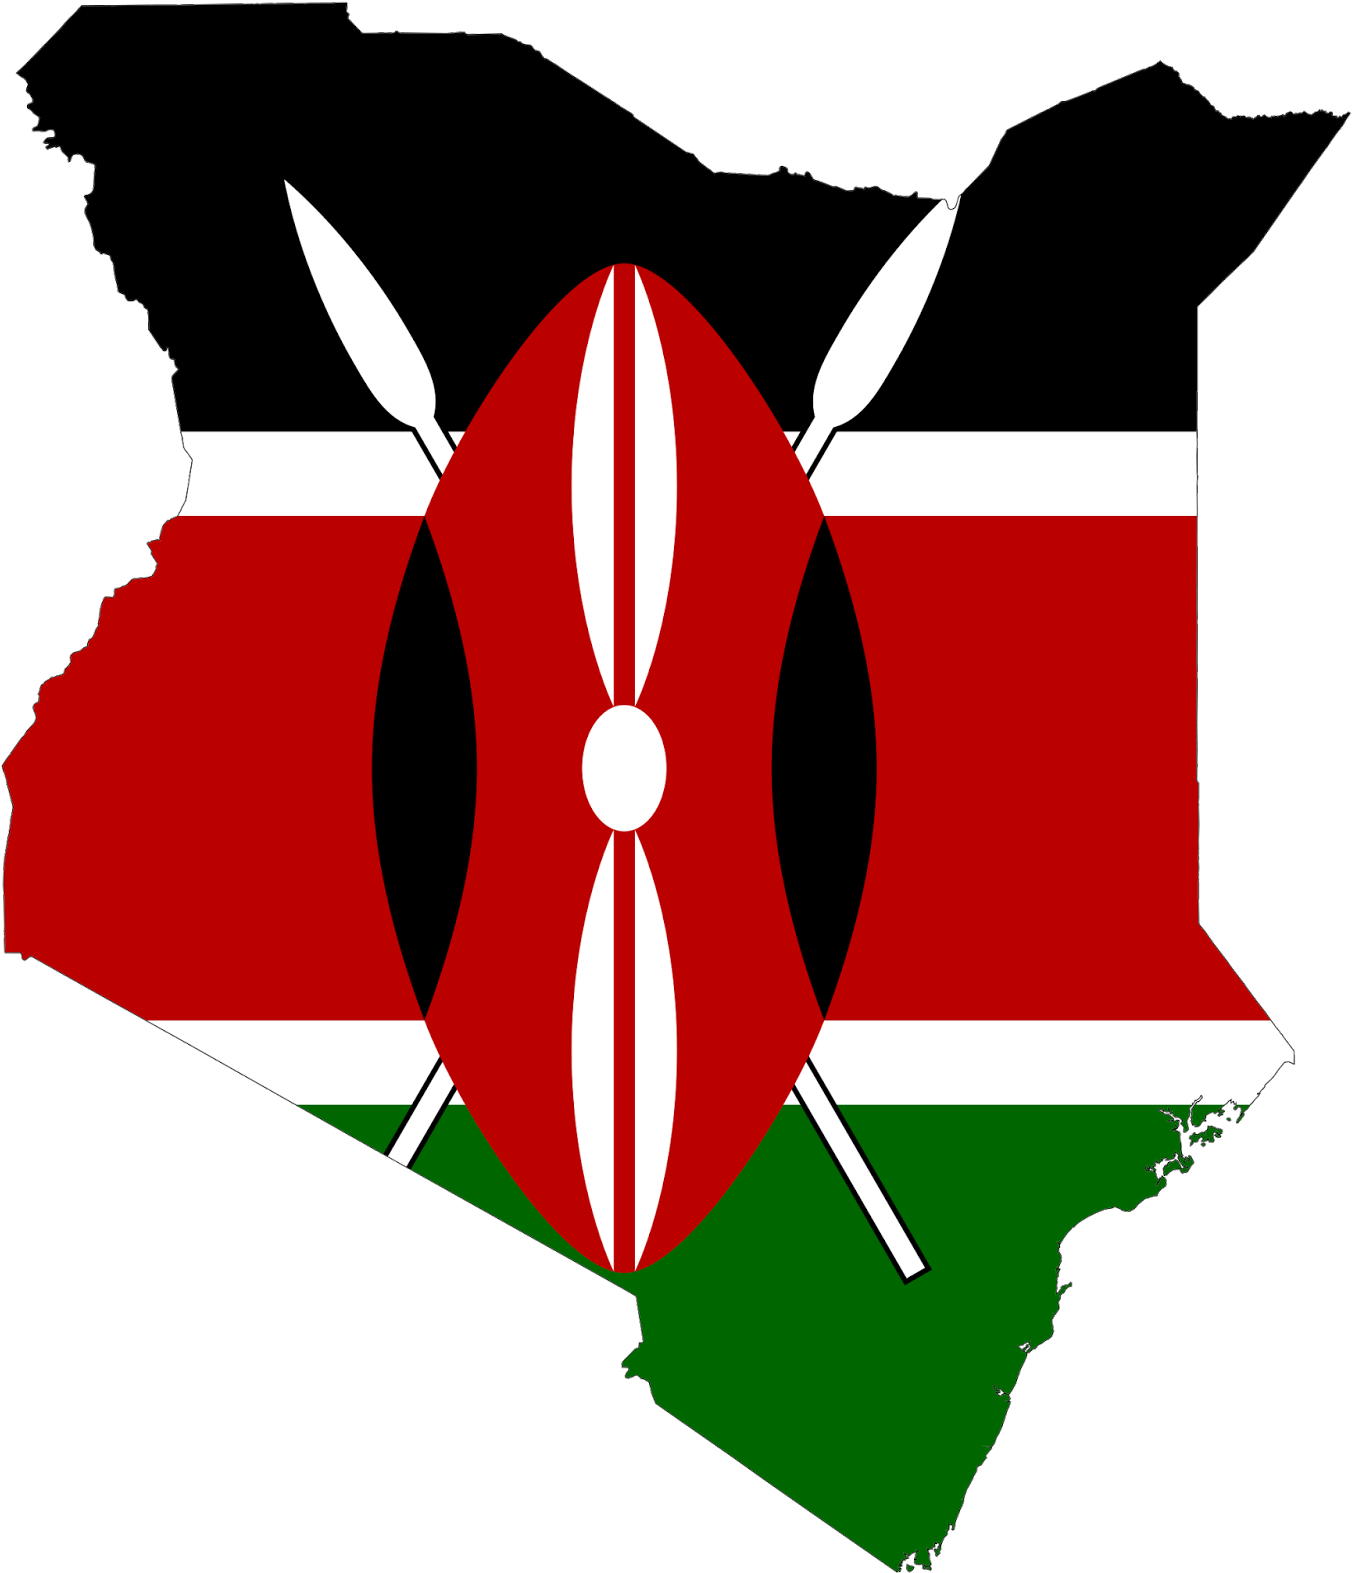 Πέμπτη, 5 Μαΐου - Kenya Flag And Map (1373x1600)